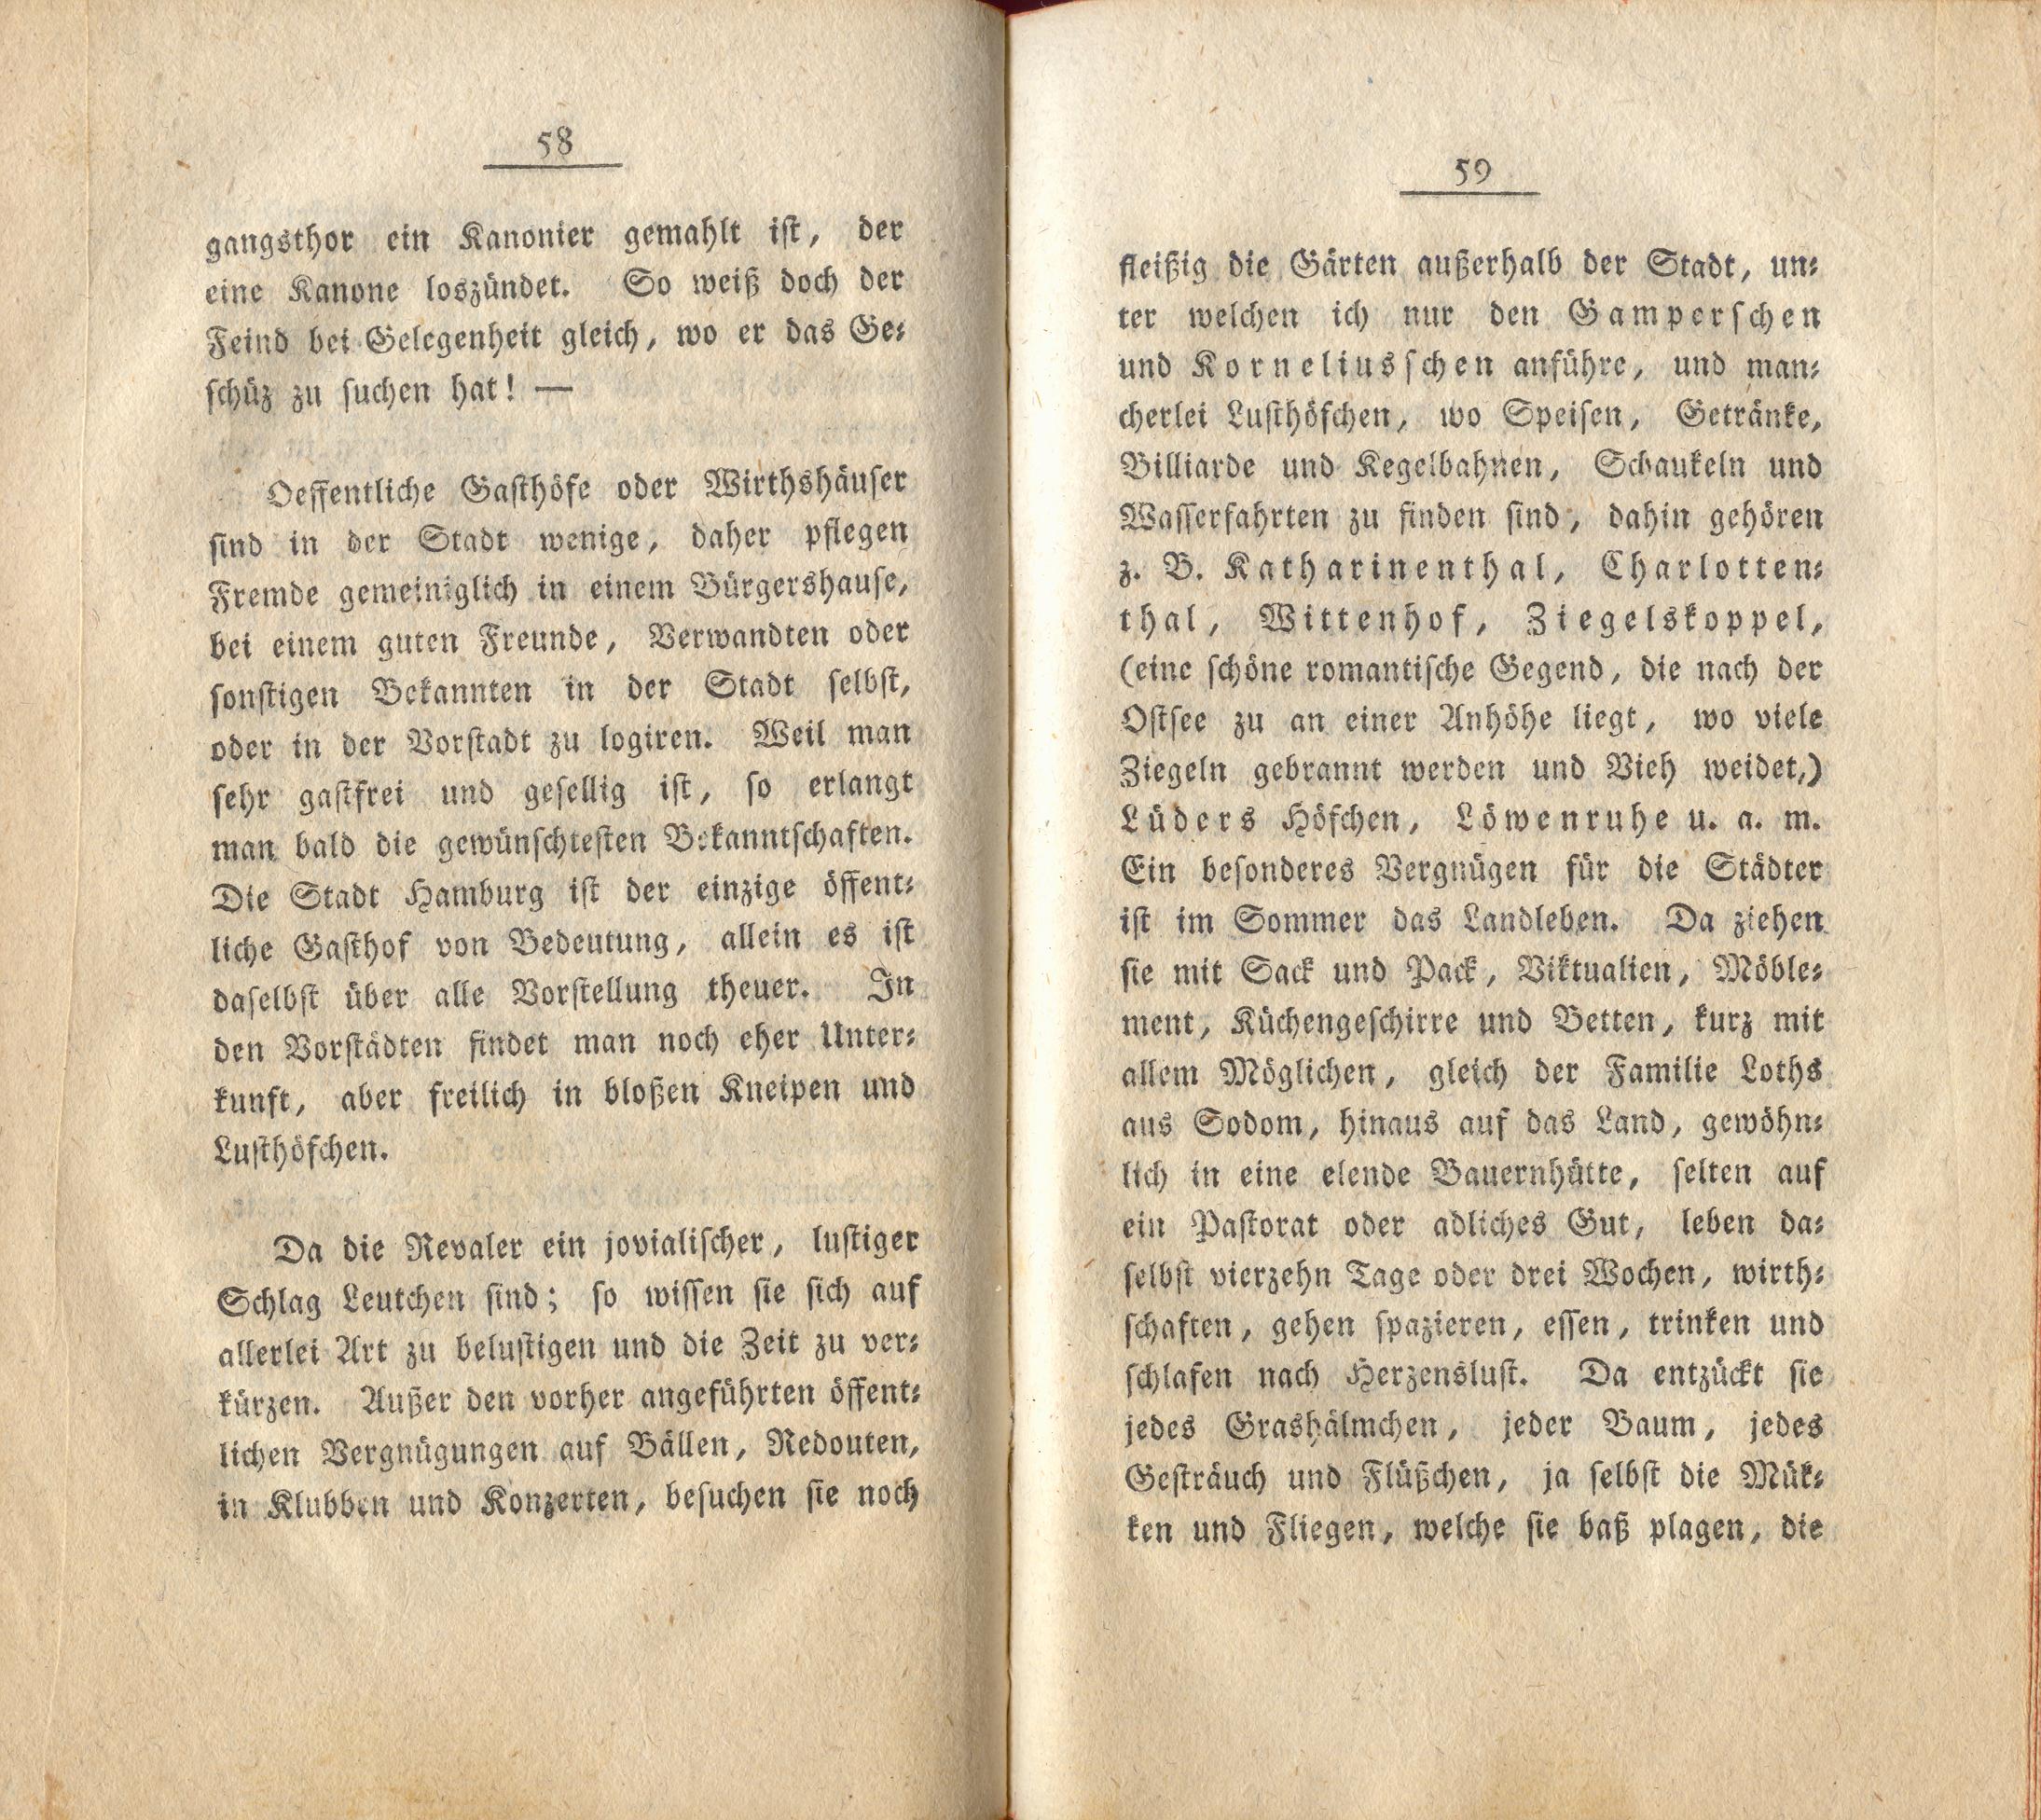 Neue Pittoresken aus Norden (1805) | 34. (58-59) Main body of text